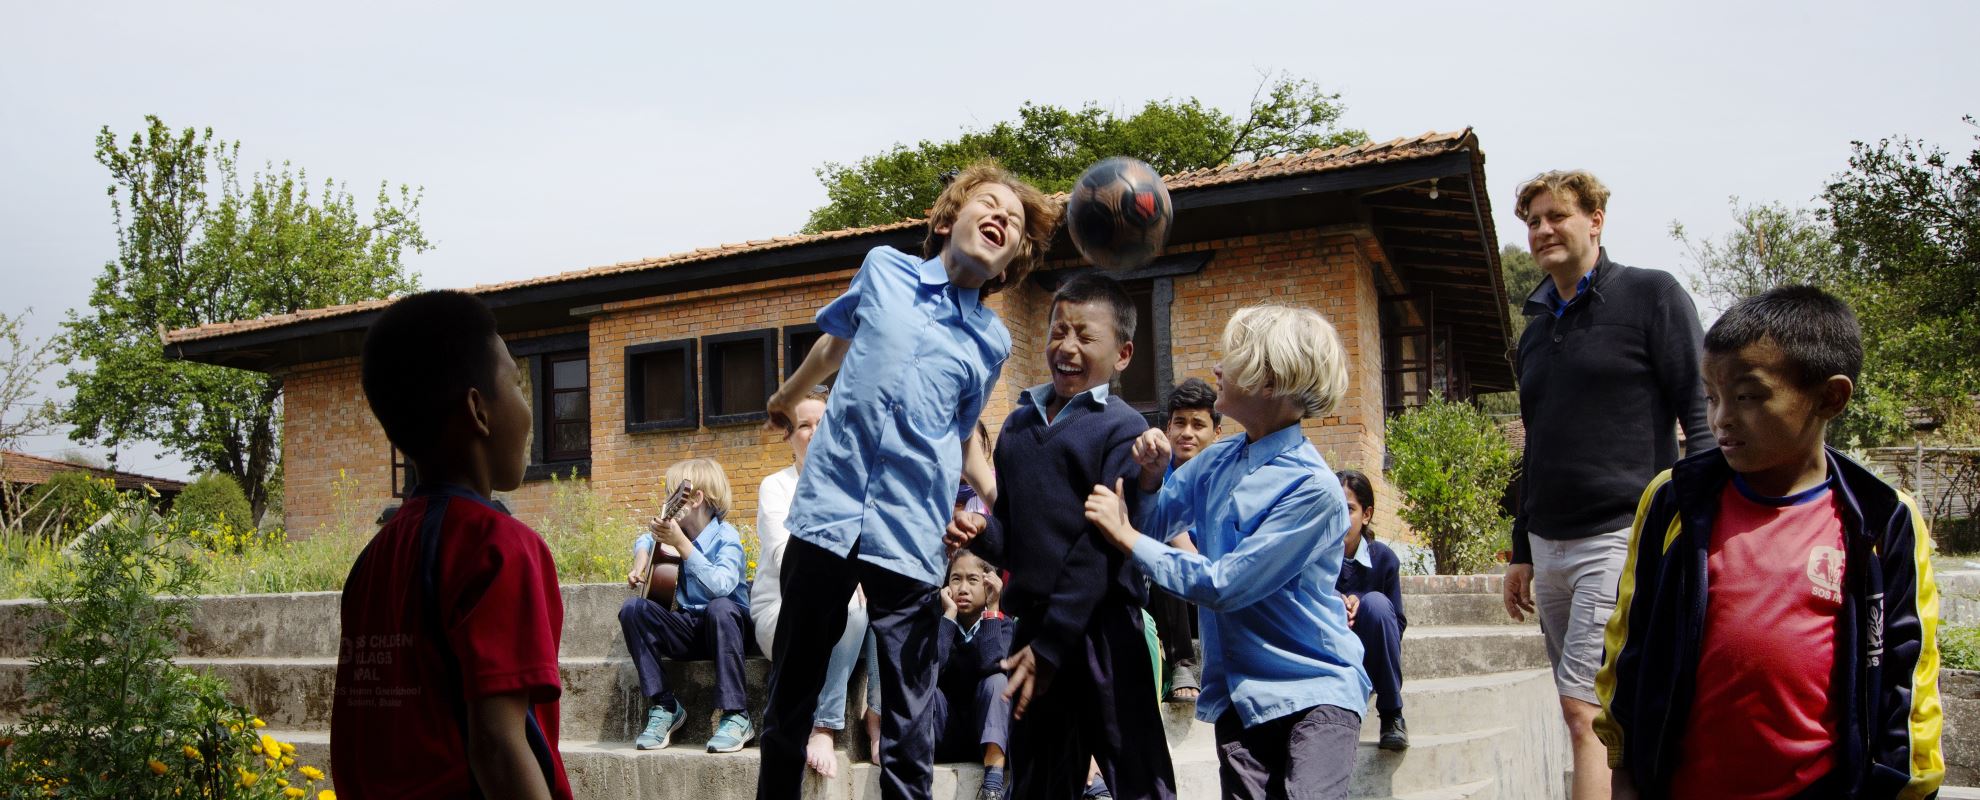 Lek er universelt og trenger ikke språk. Fotball knytter guttene sammen. Foto: Nina Ruud